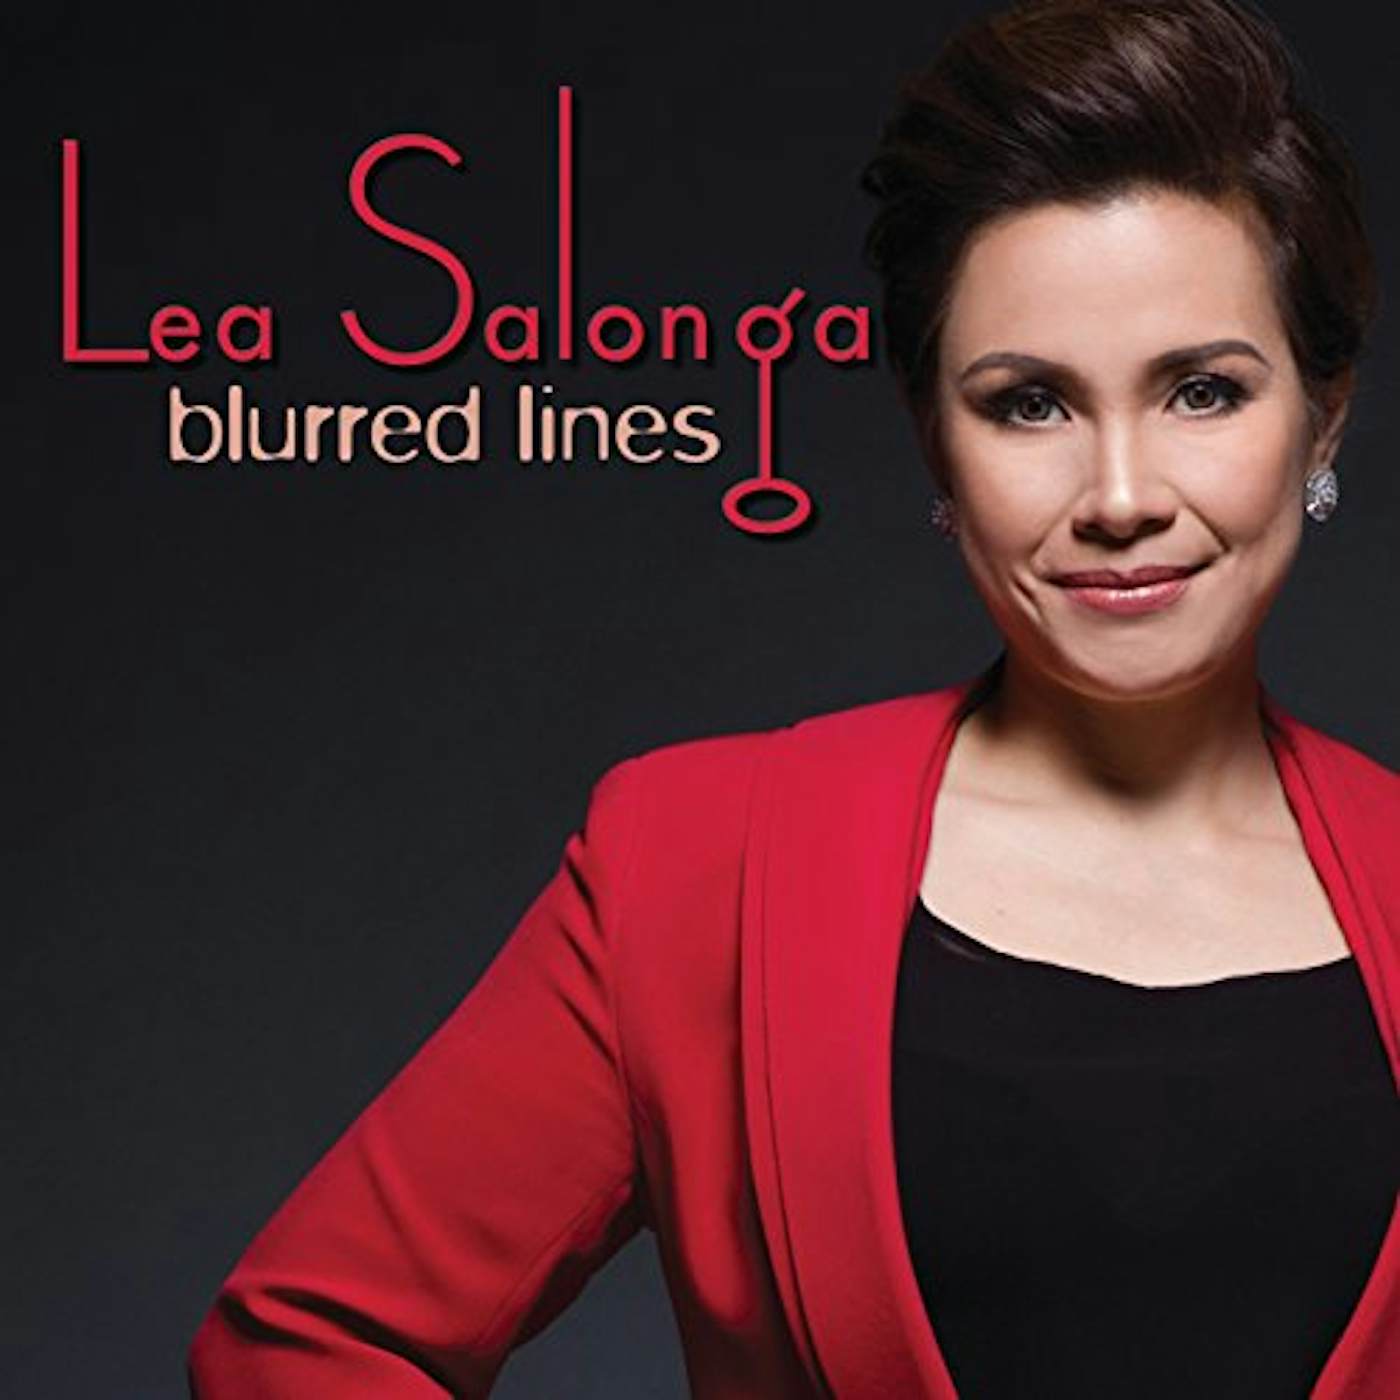 Lea Salonga BLURRED LINES CD